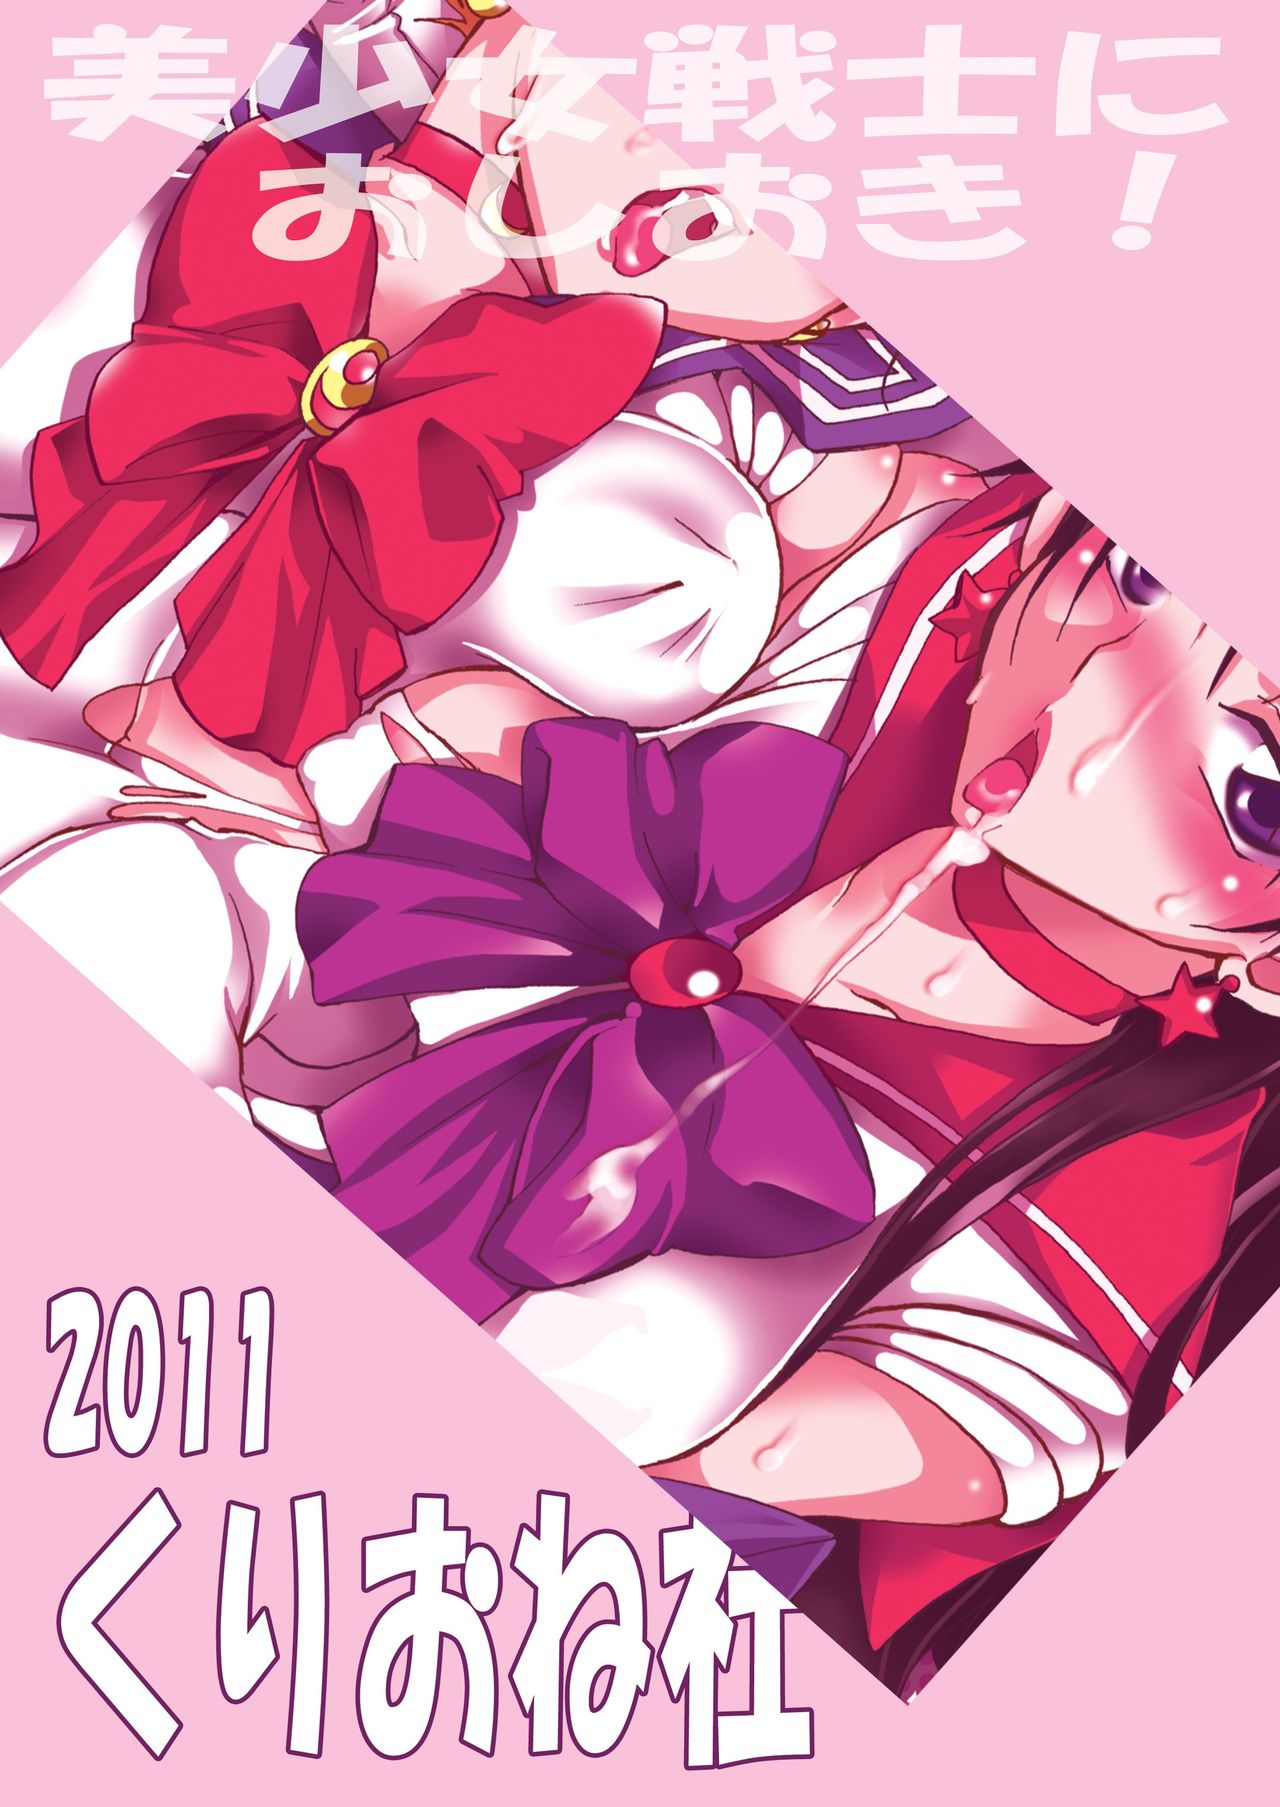 [Kurione-sha (YU-RI)] Bishoujo Senshi ni Oshioki! (Bishoujo Senshi Sailor Moon) [French] {SAXtrad} [Digital] [くりおね社 (YU-RI)] 美少女戦士におしおき！ (美少女戦士セーラームーン) [フランス翻訳] [DL版]